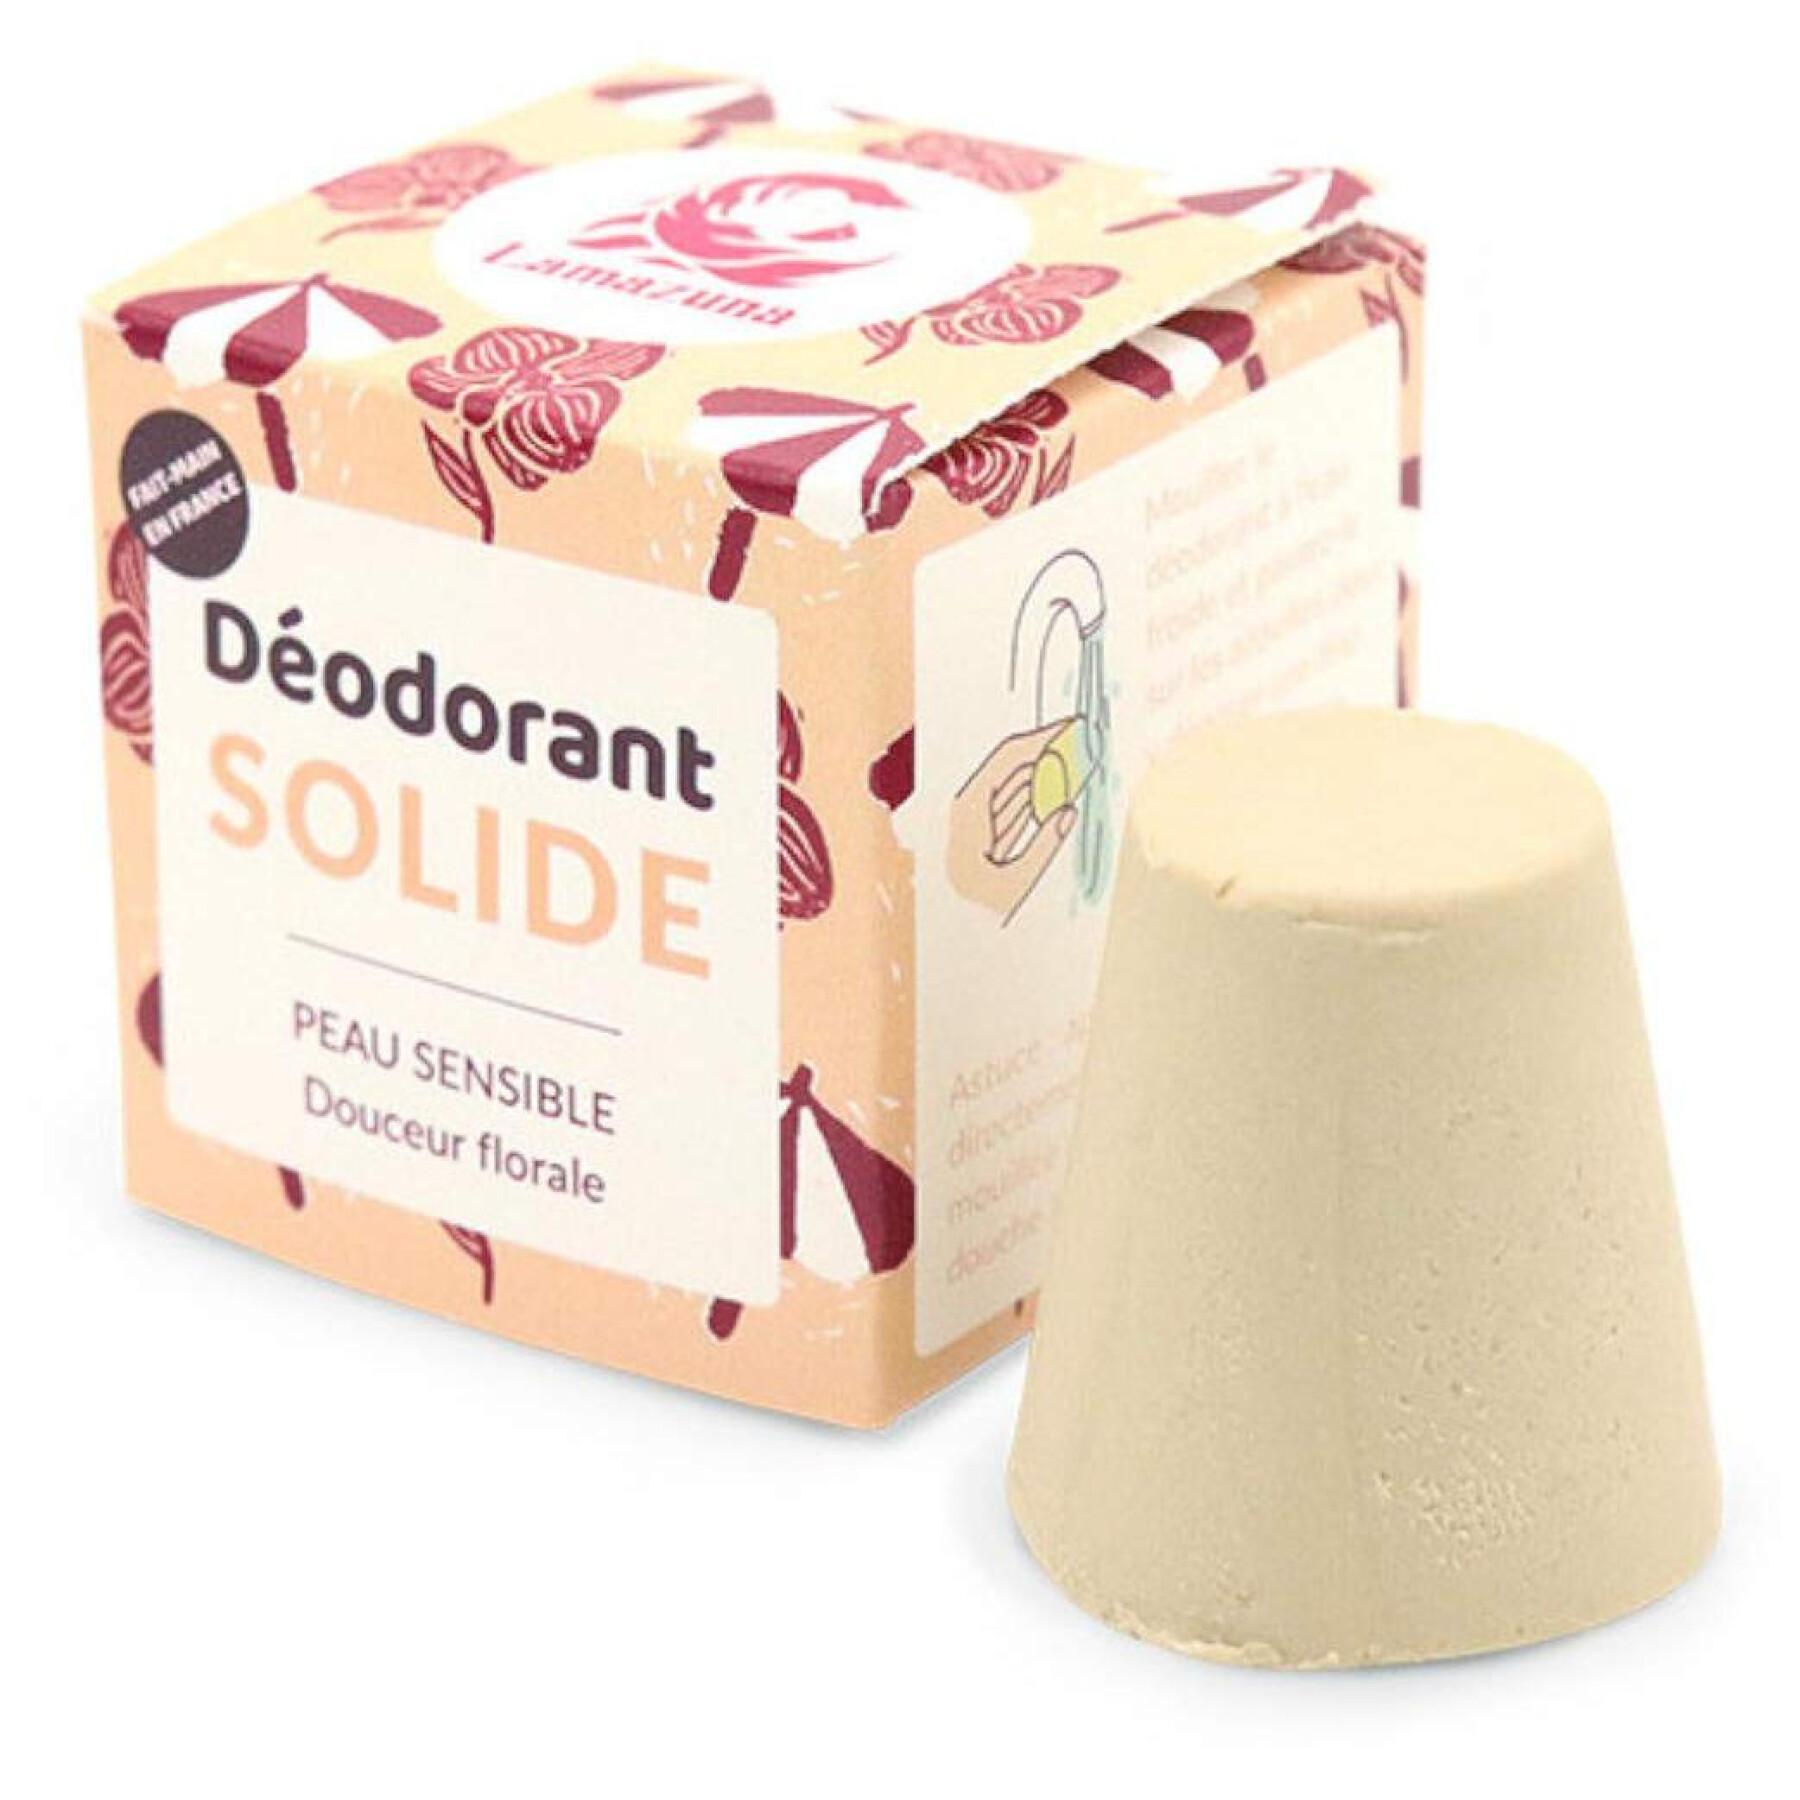 Déodorant solide - douceur florale - peau sensible Lamazuna (30 ml)